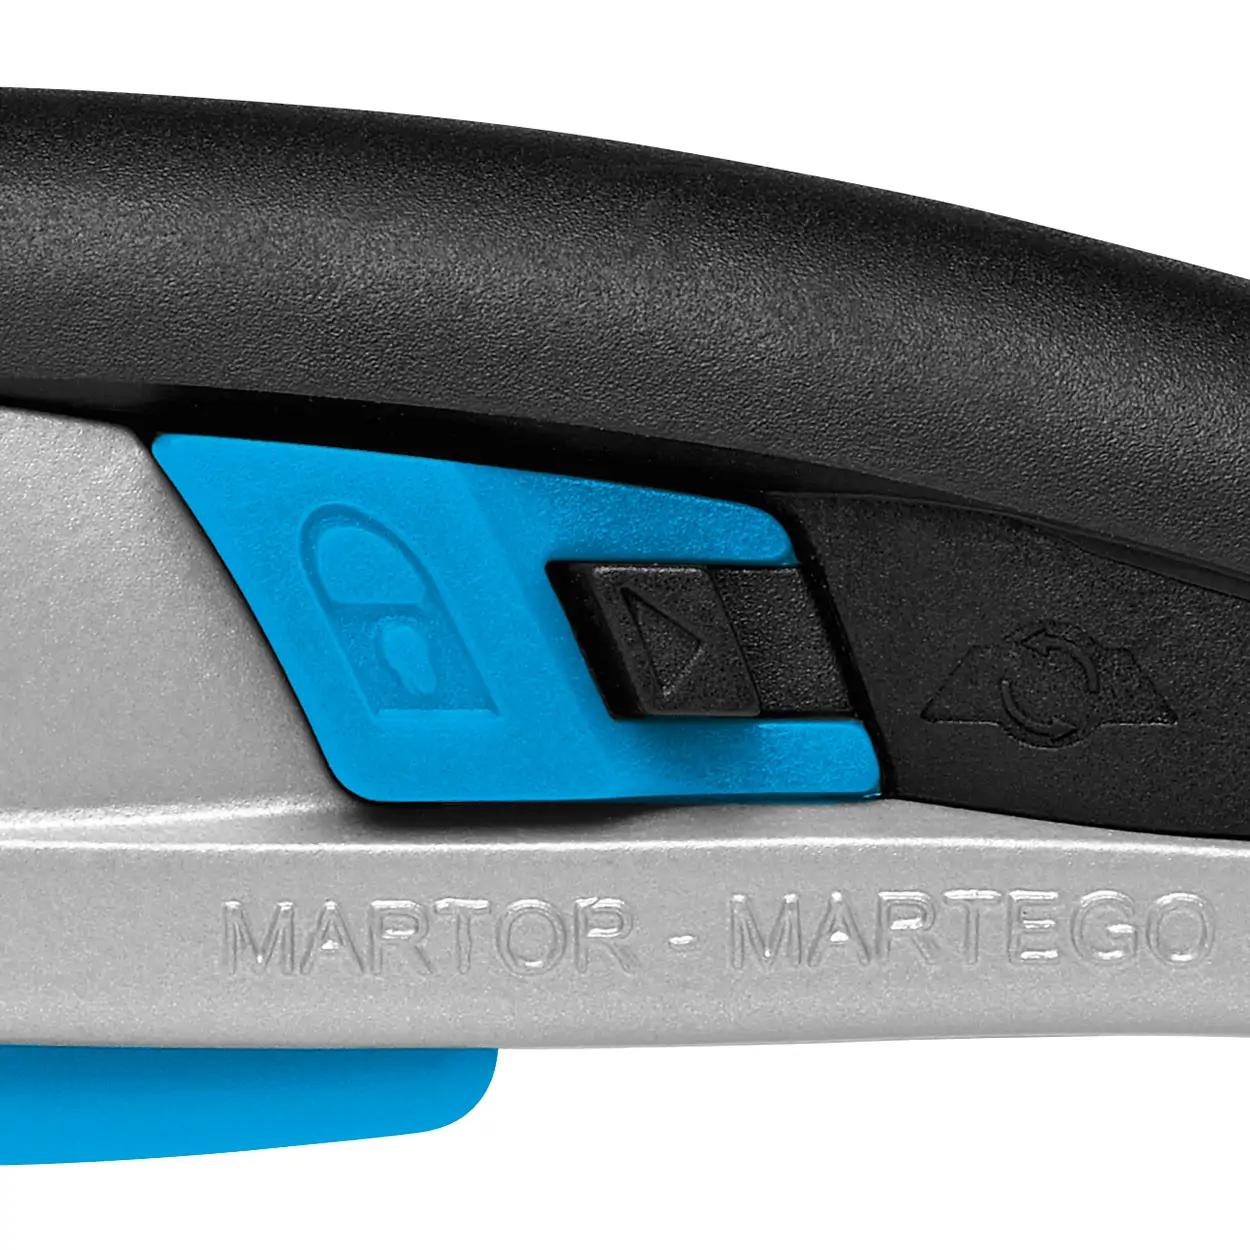 SECUPRO MARTEGO - Nóż ergonomiczny z mechanizmem dźwigniowym